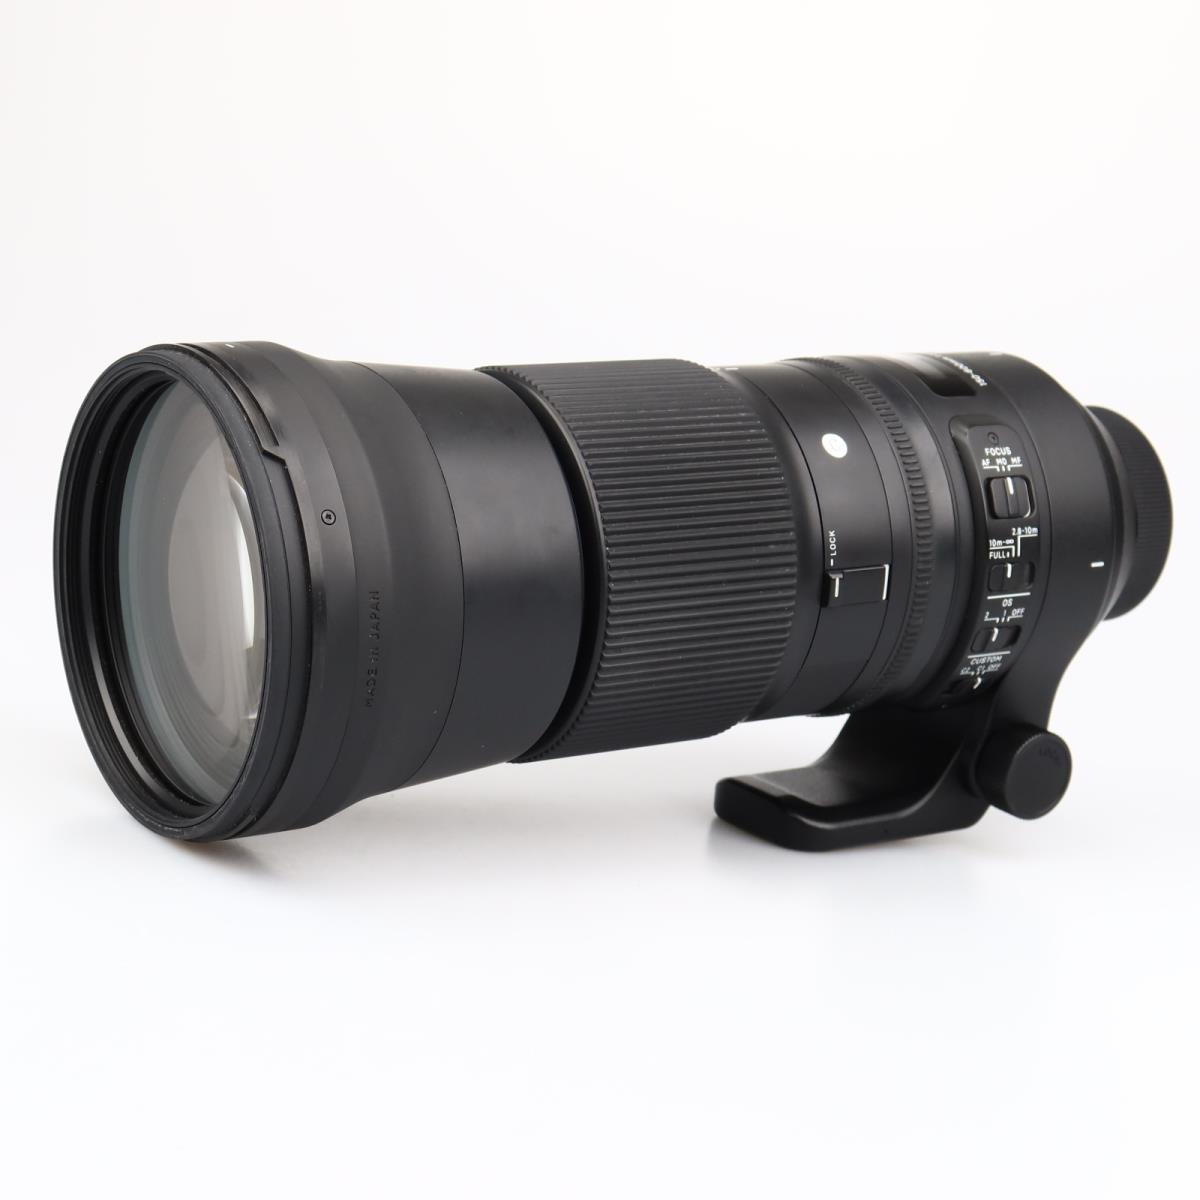 (Myyty) Sigma 150-600mm f/5-6.3 DG OS HSM C (Nikon) (käytetty)